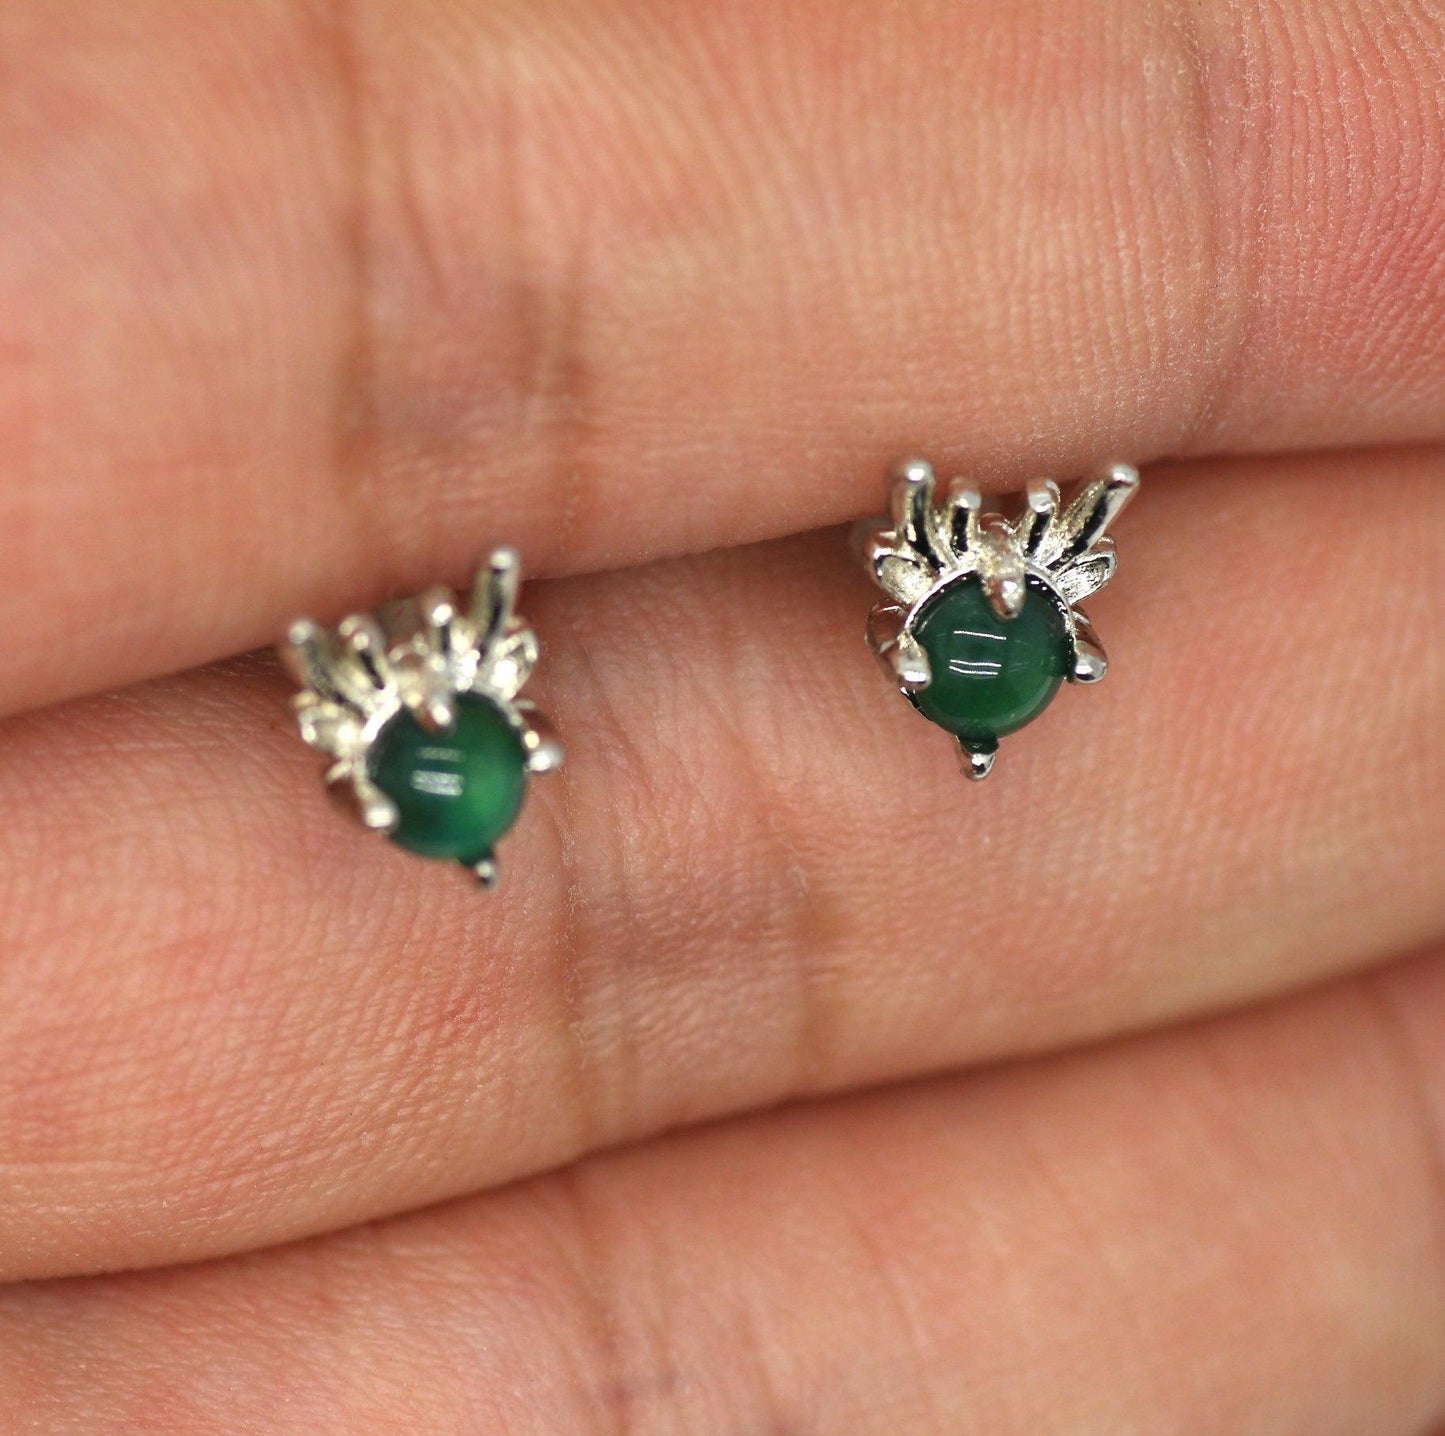 Type A Jadeite Jade Earrings s925 Silver Inlay X7-OO7M-HCTK